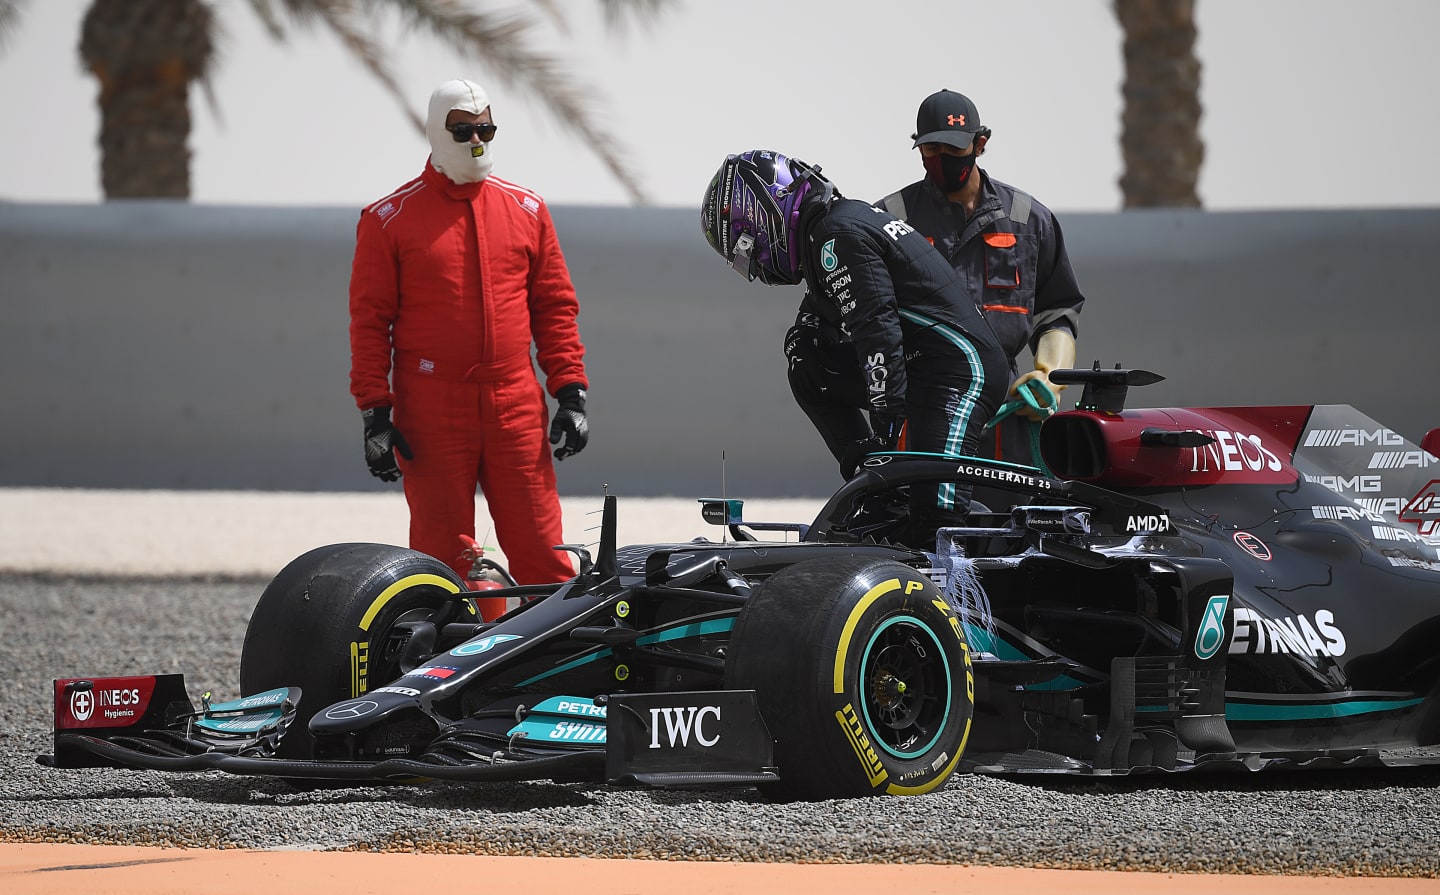 BAHRAIN, BAHRAIN - MARCH 13: Lewis Hamilton of Great Britain driving the (44) Mercedes AMG Petronas